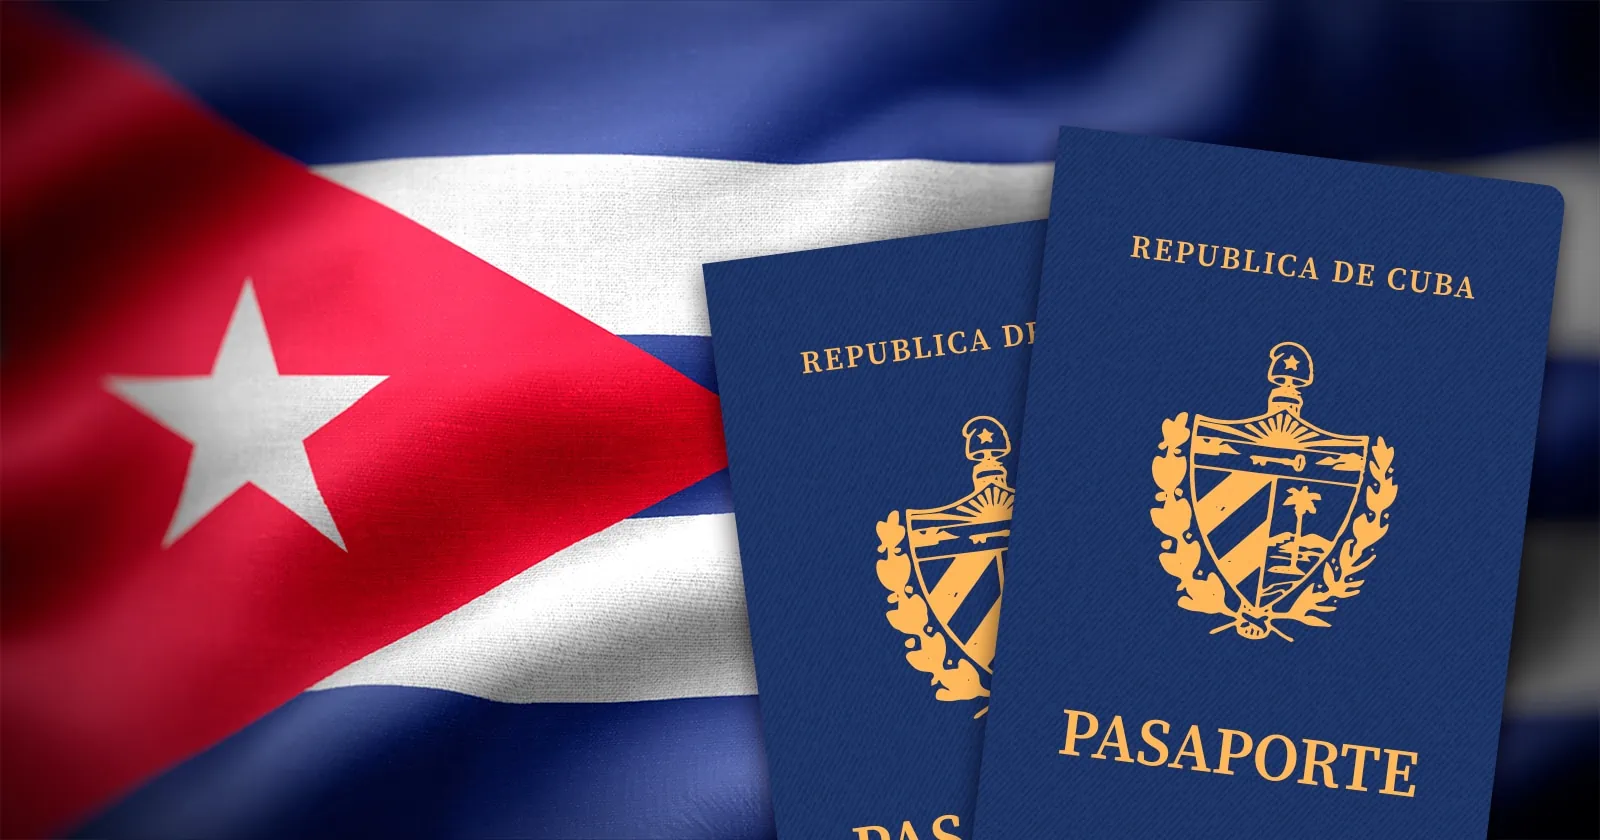 Estos Son los Beneficios del Pasaporte Cubano si lo Solicitas Fuera de Fronteras Cubanas